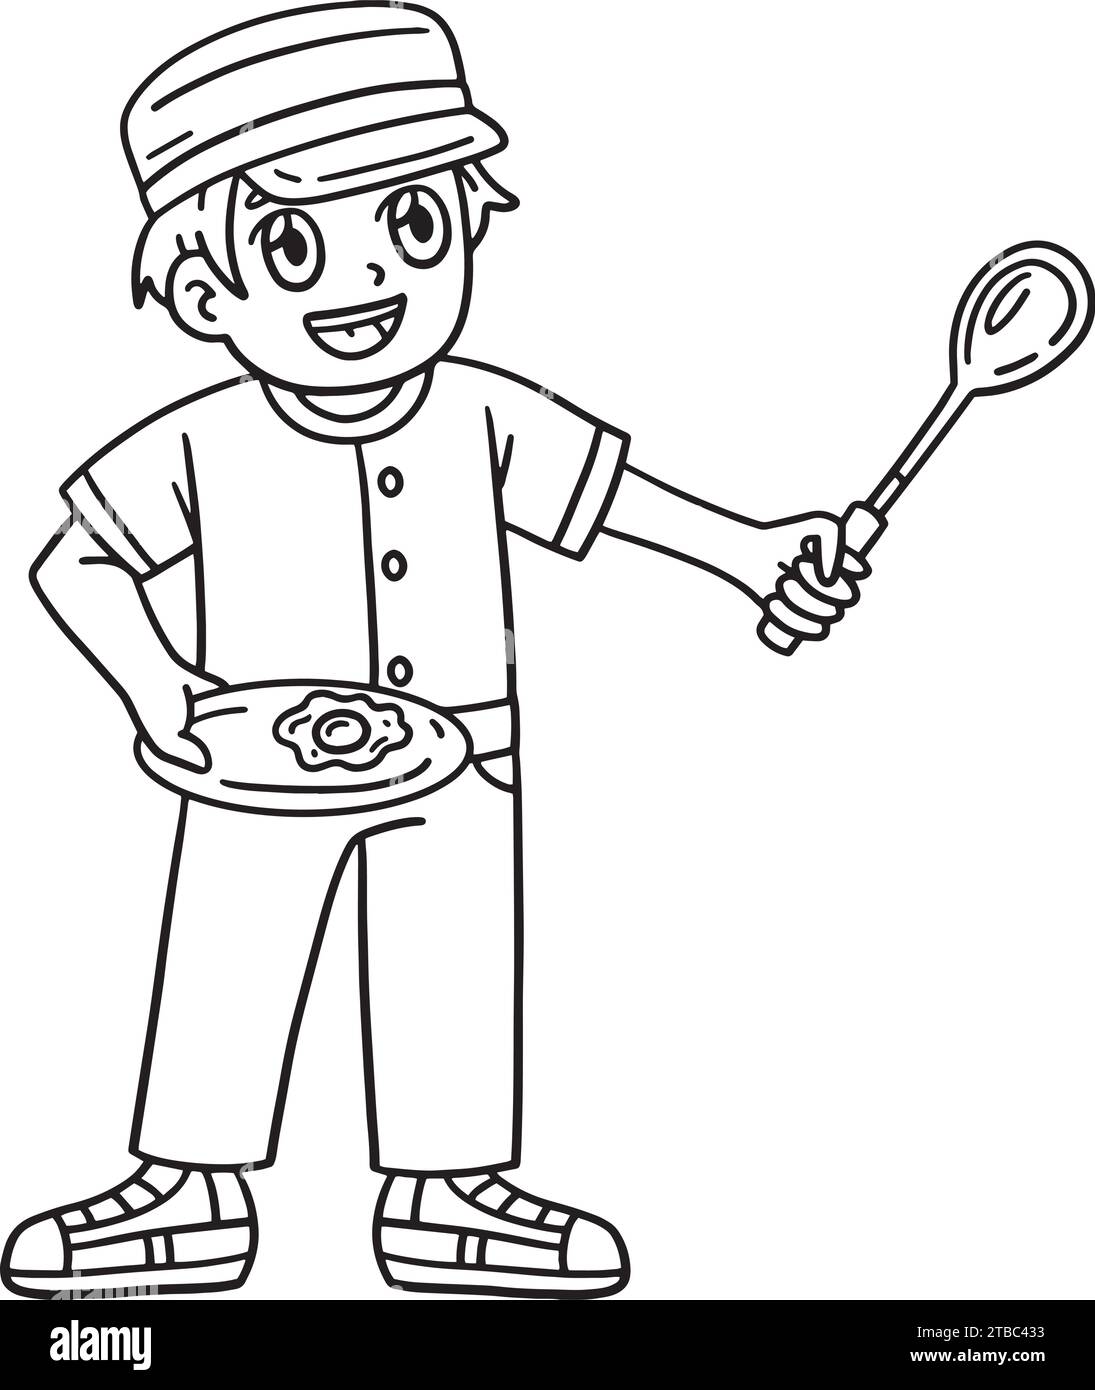 Camping camper Boy Cooking pagina isolata da colorare Illustrazione Vettoriale